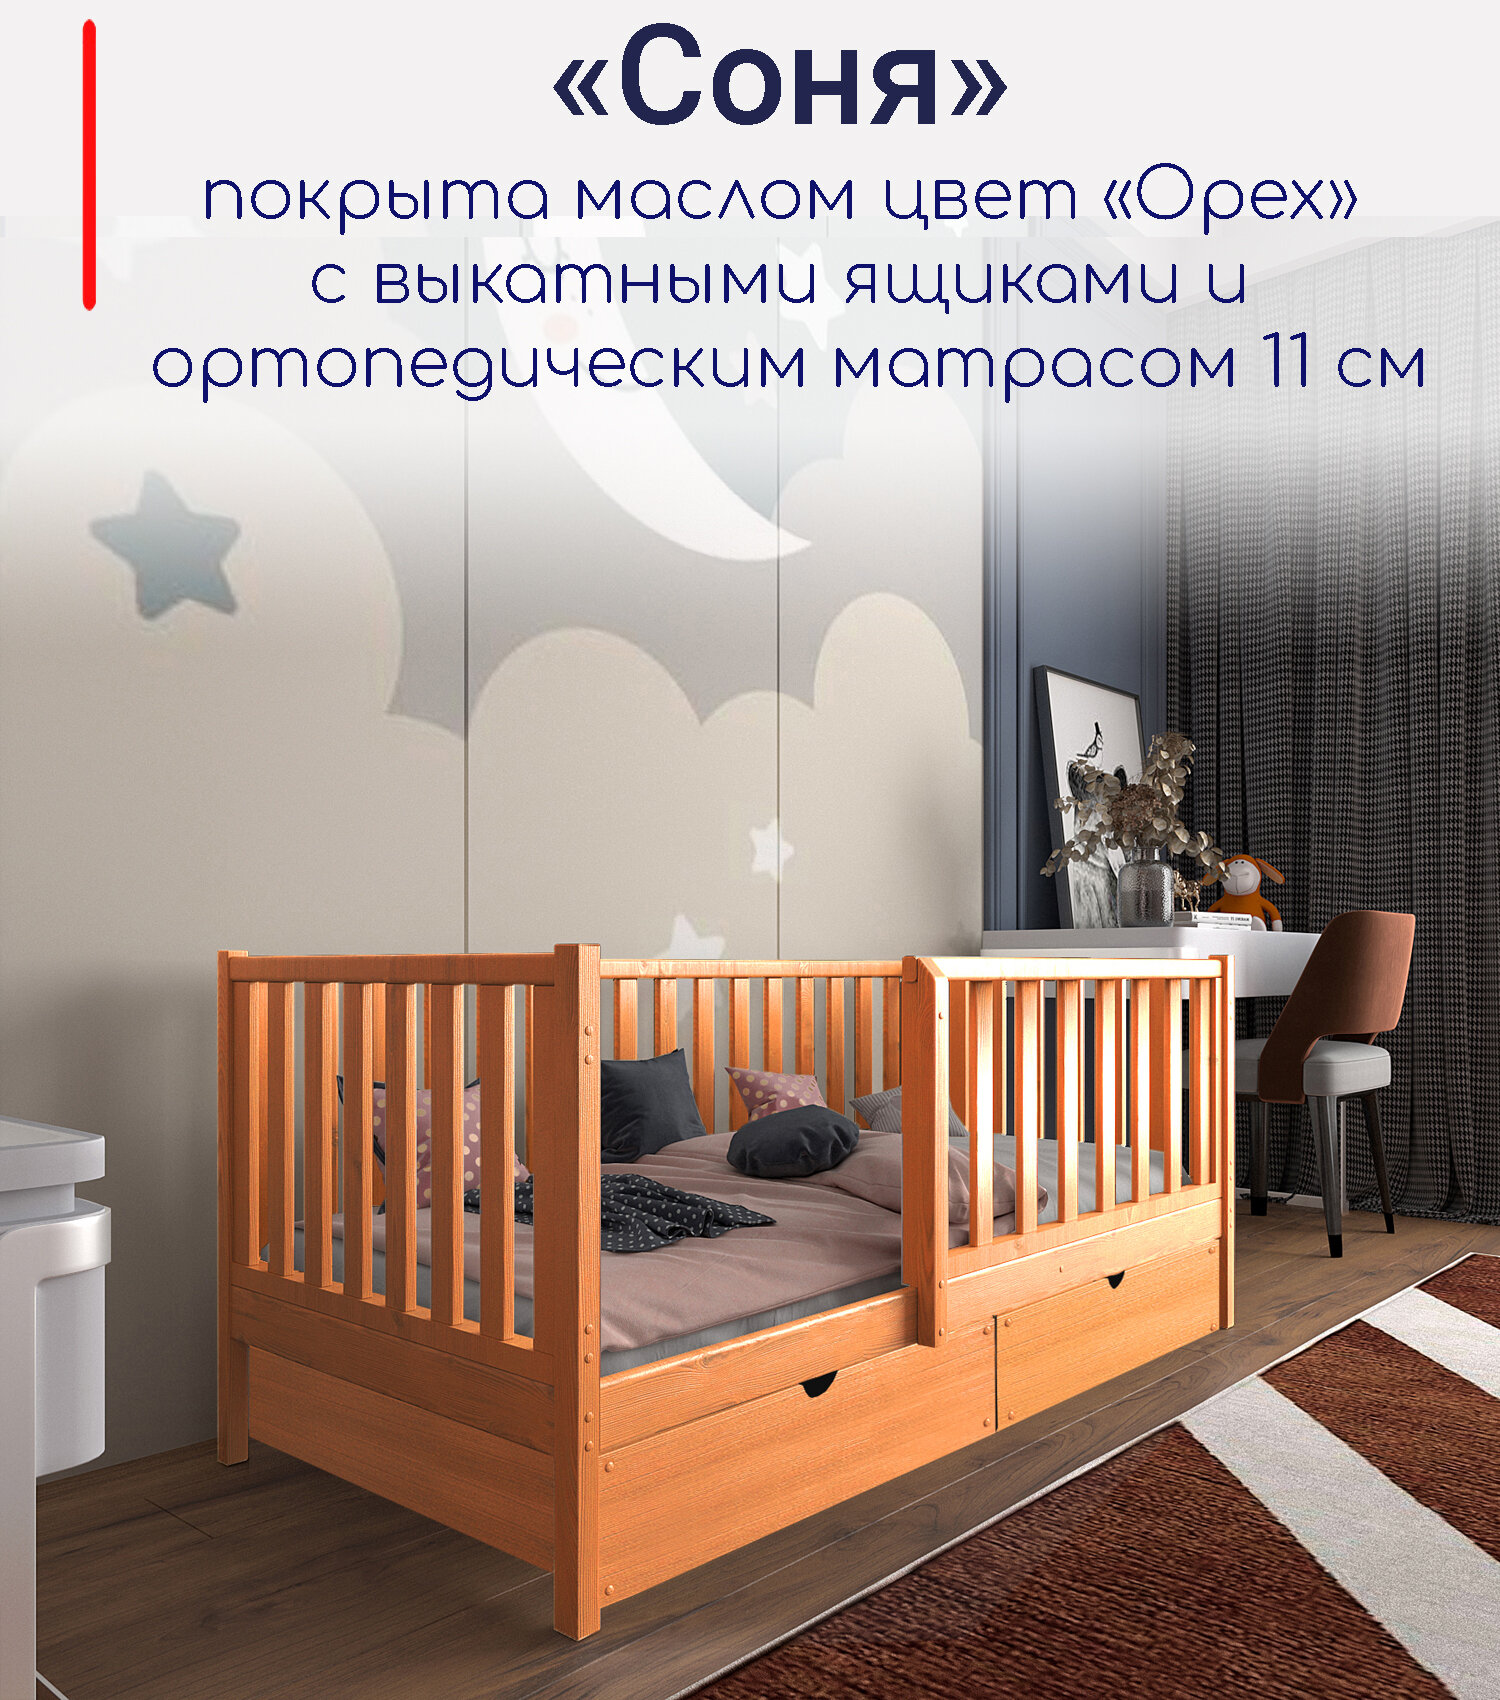 Кровать детская "Соня", спальное место 180х90, в комплекте с выкатными ящиками и ортопедическим матрасом, масло "Орех", из массива